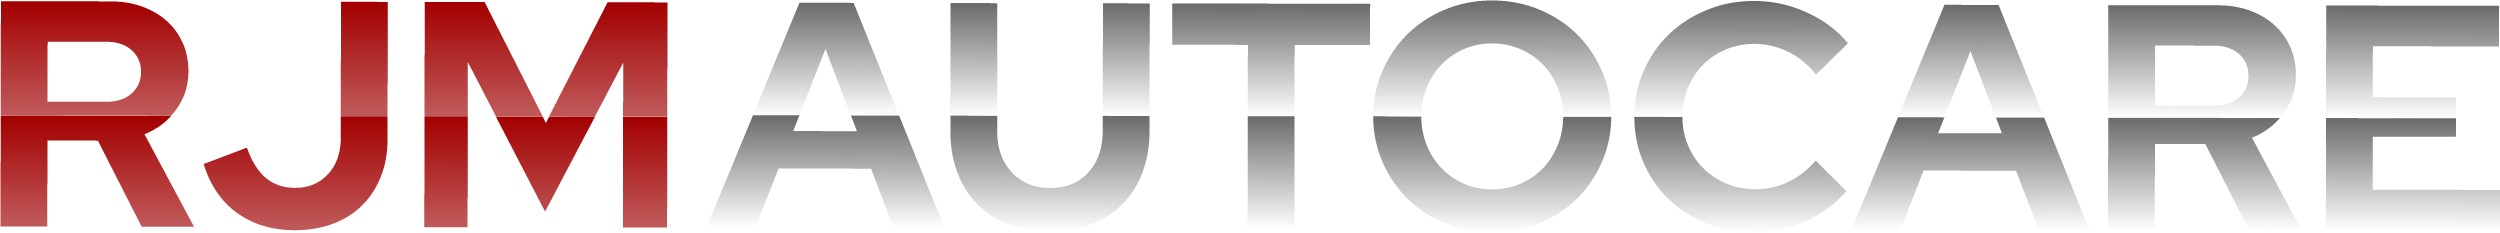 RJM Autocare logo